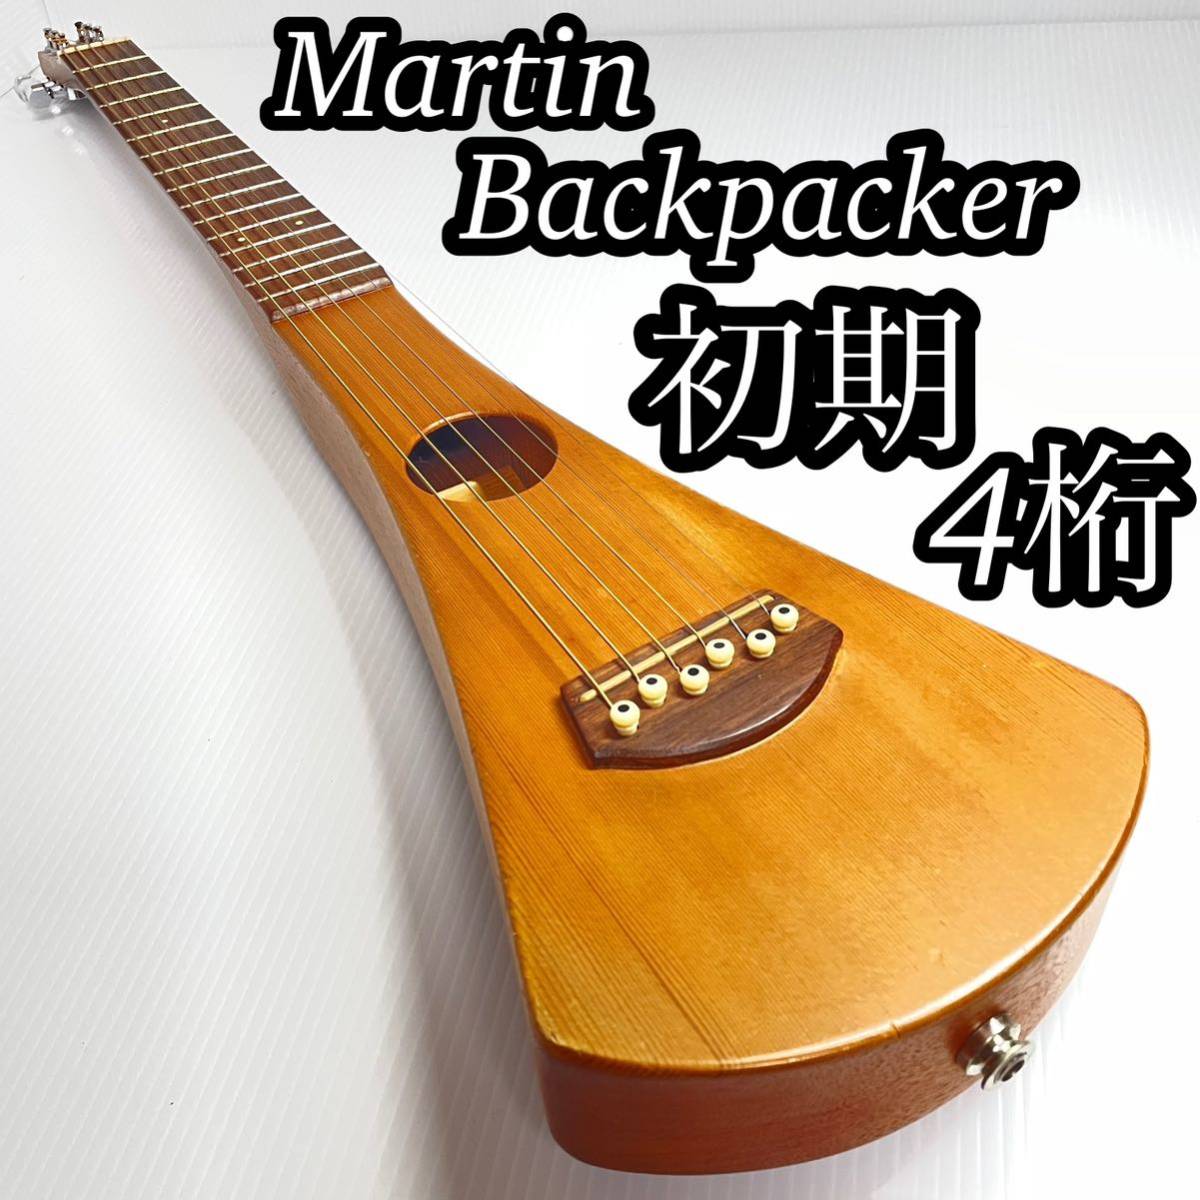 希少 レア Martin マーチン マーティン 初期 シリアルナンバー4桁 バックパッカー トラベル 旅行 ギター エレアコ